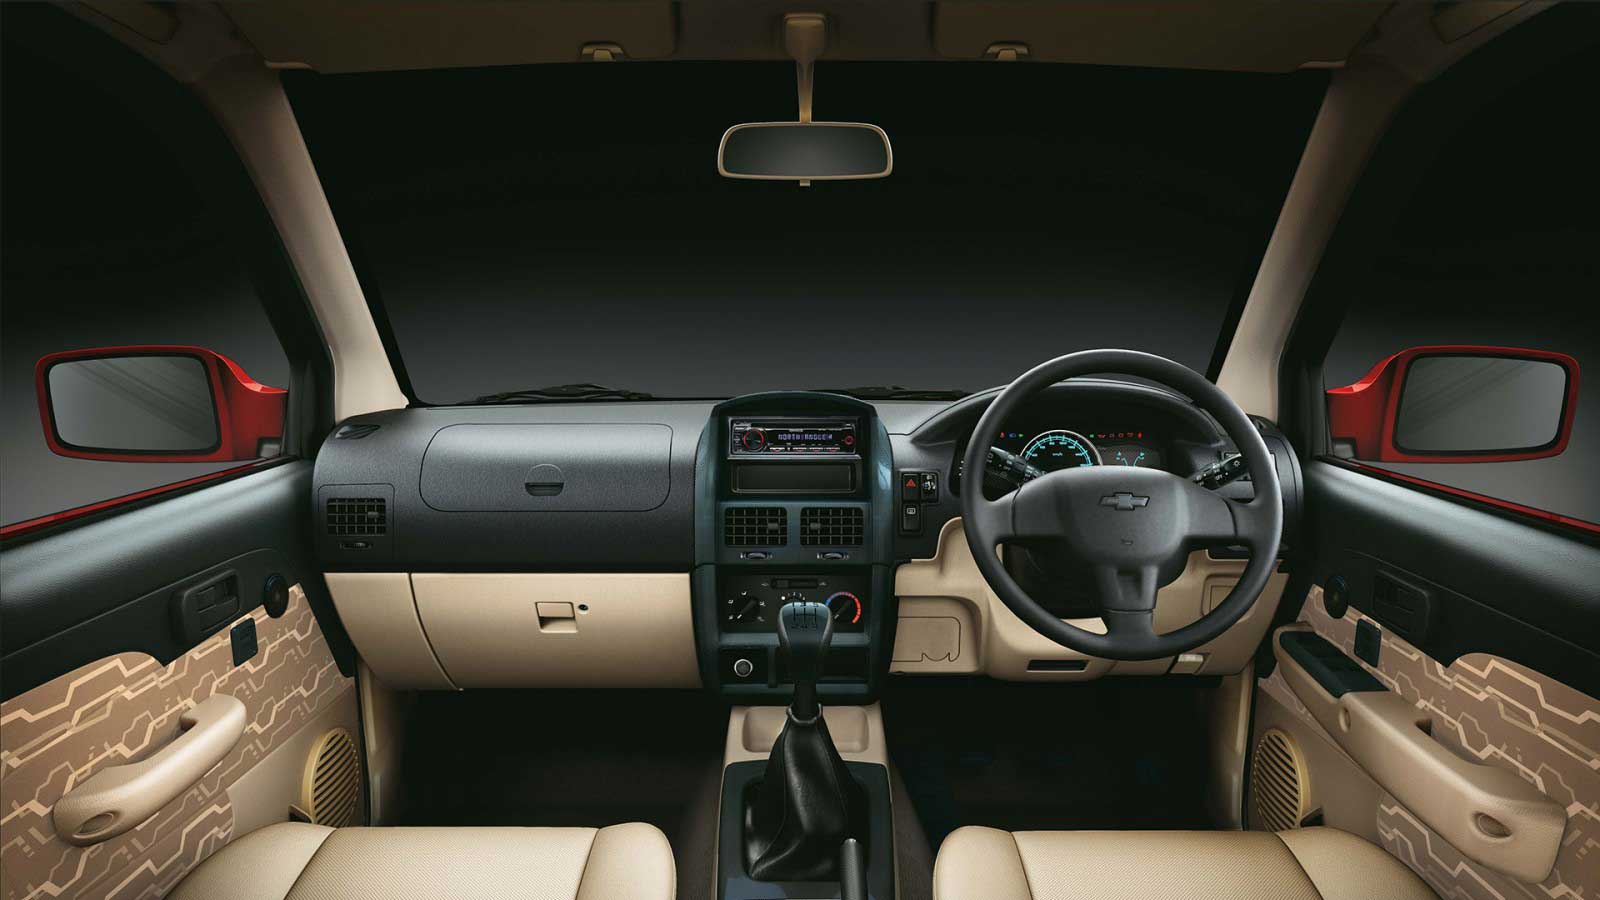 Chevrolet Tavera Neo 3 LS 7 STR BSIII Interior front view